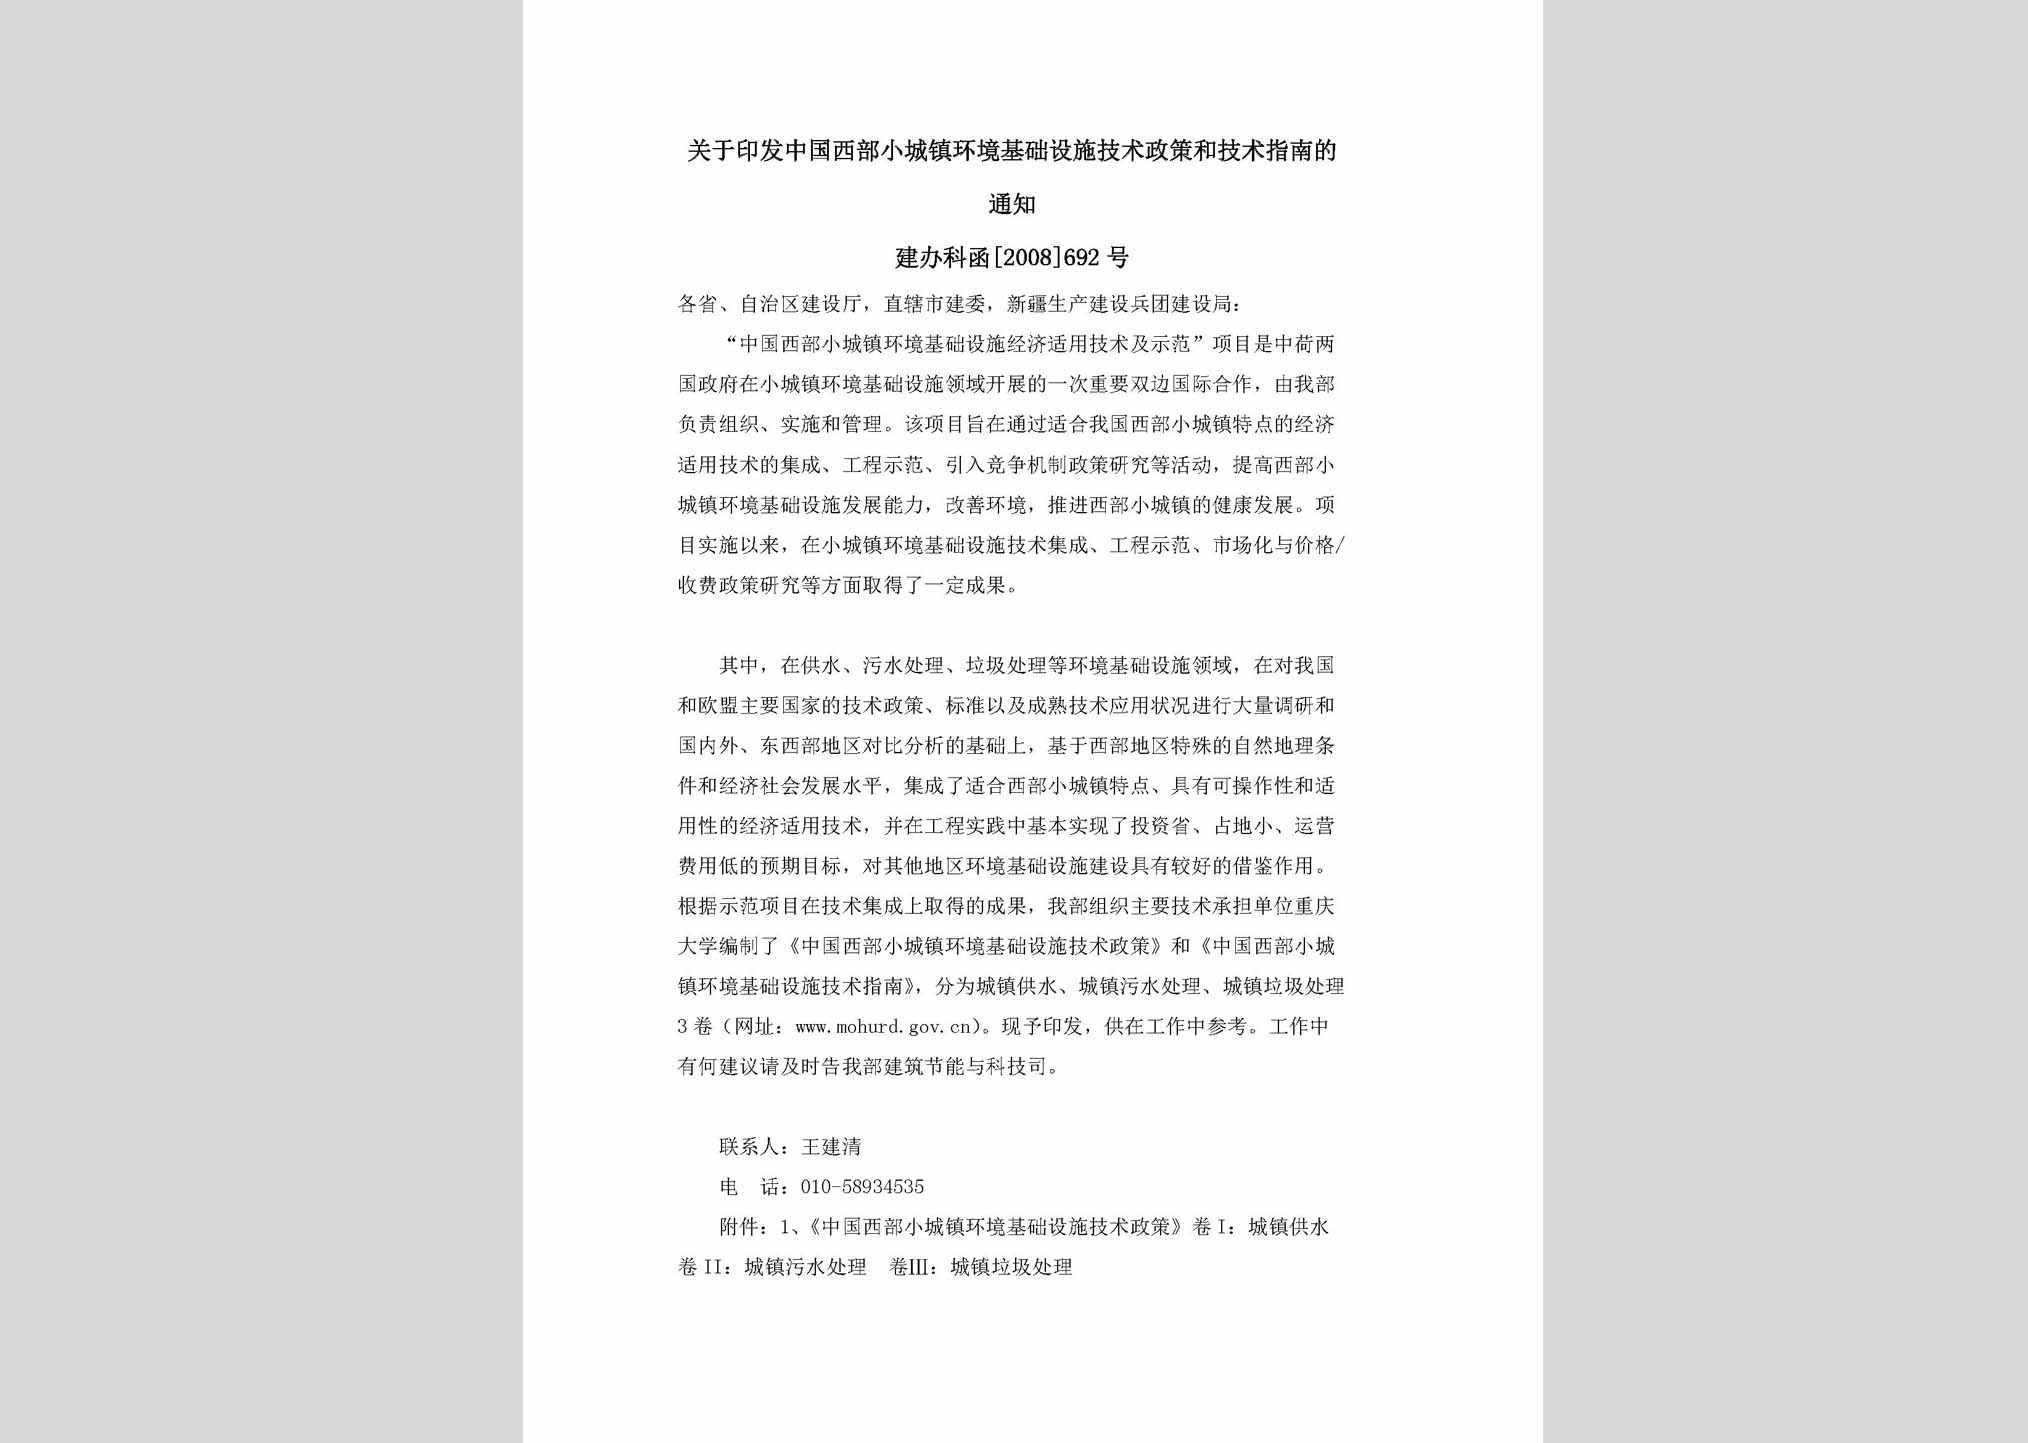 建办科函[2008]692号：关于印发中国西部小城镇环境基础设施技术政策和技术指南的通知